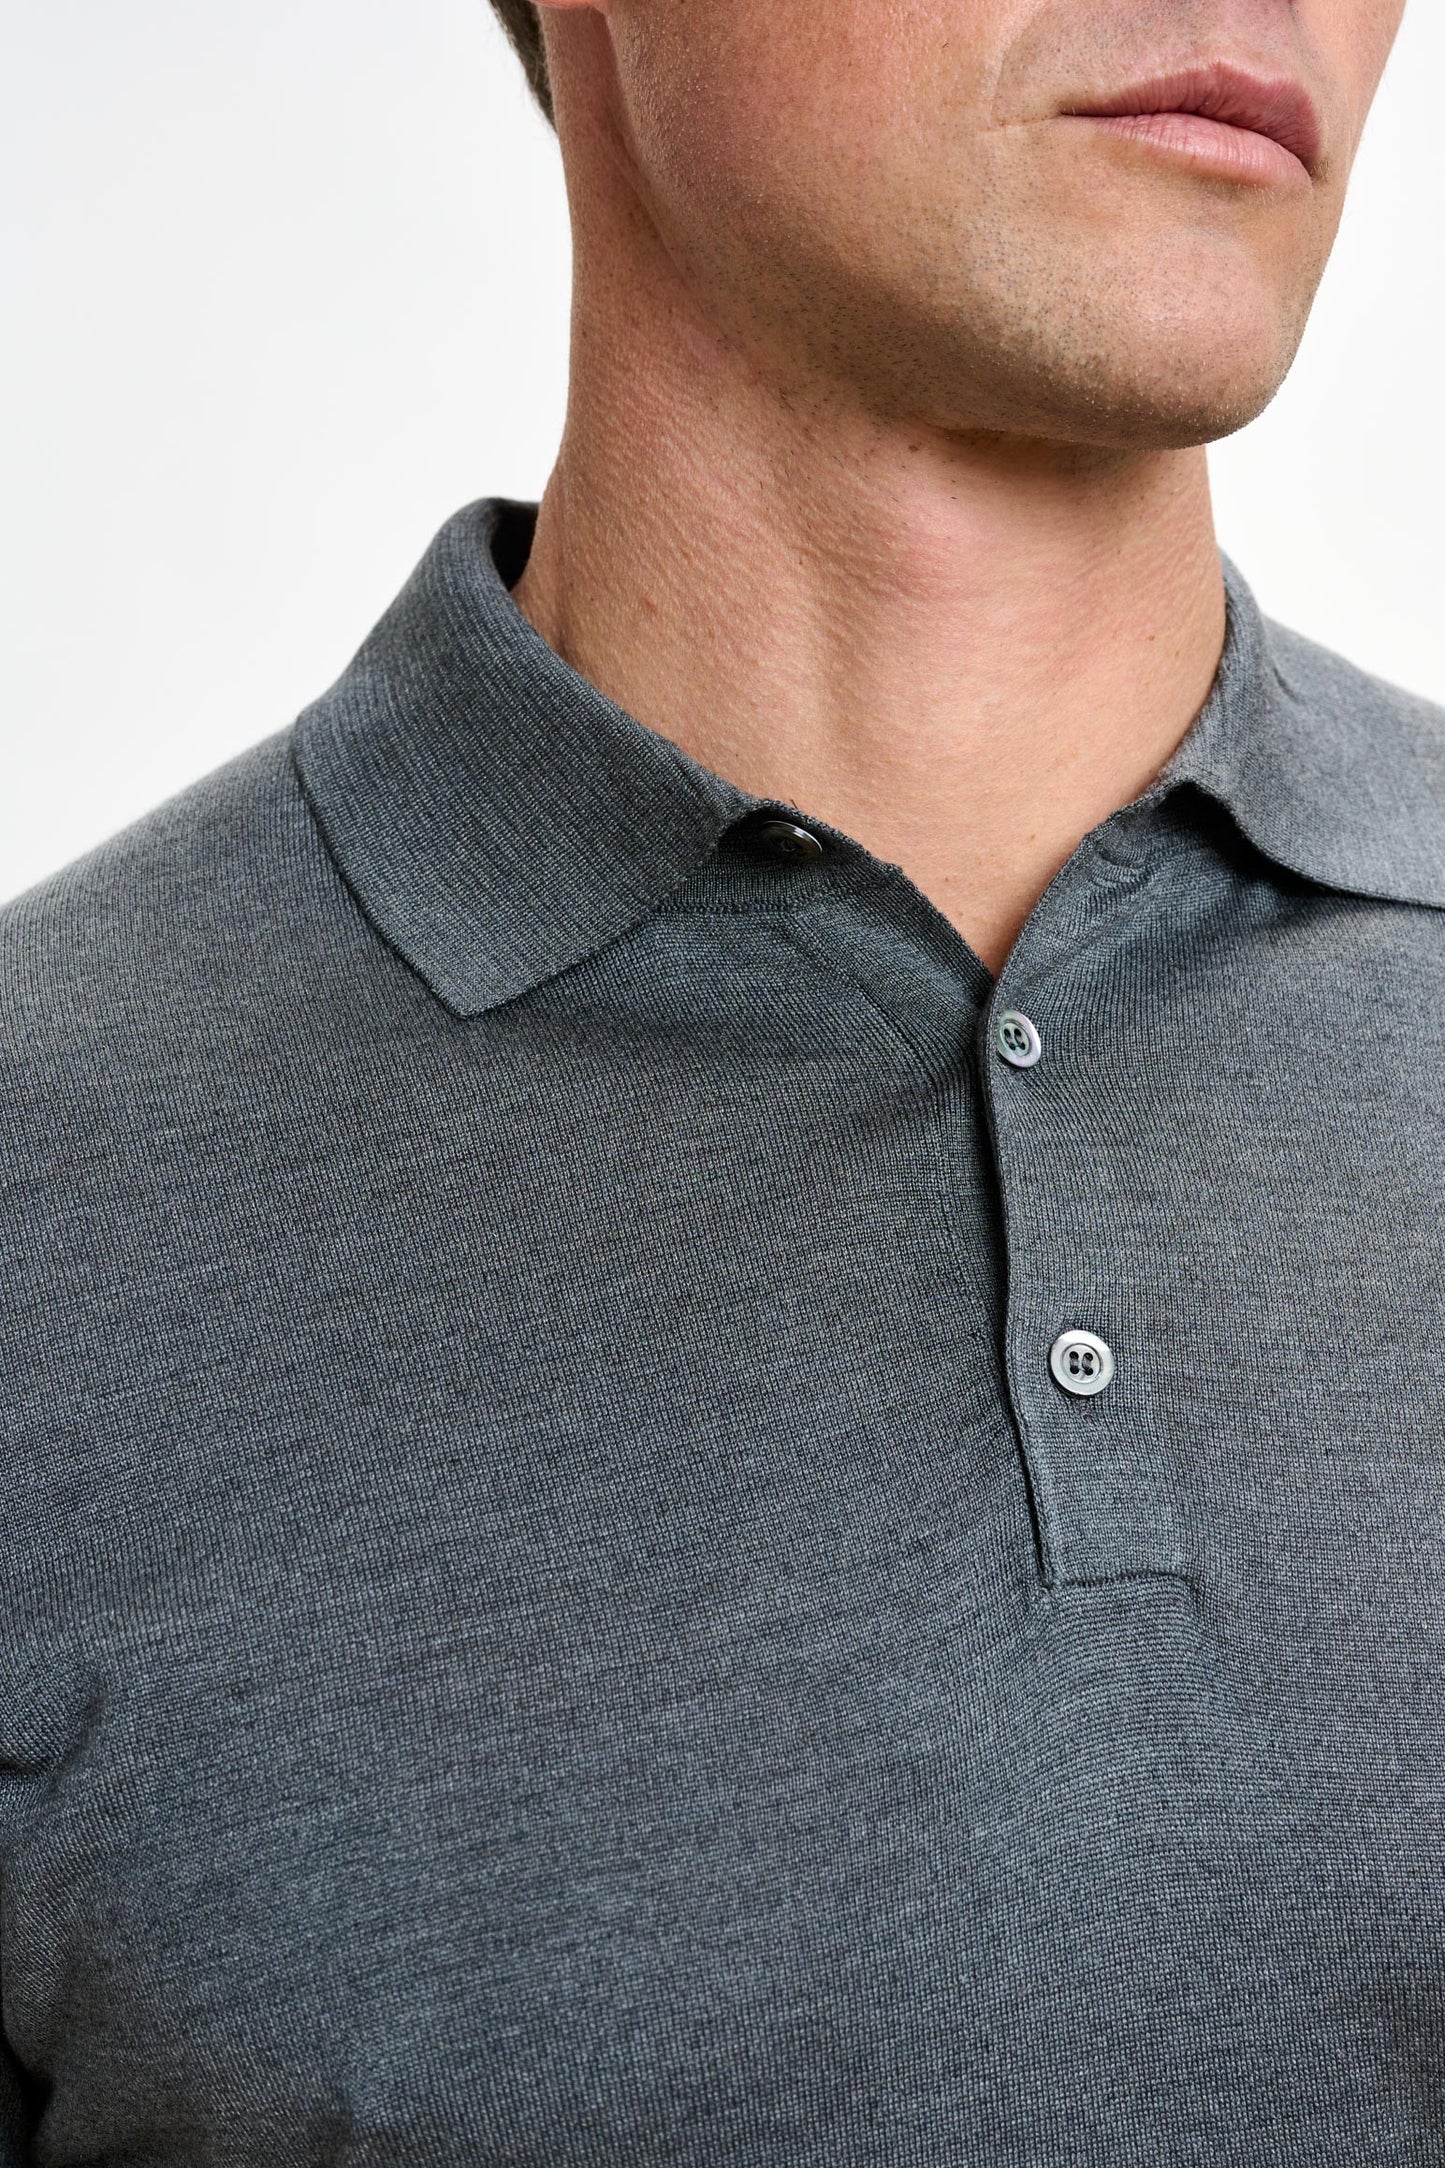 Polo Kendal en soie tricoté à manches courtes et 3 boutons, gris fumé